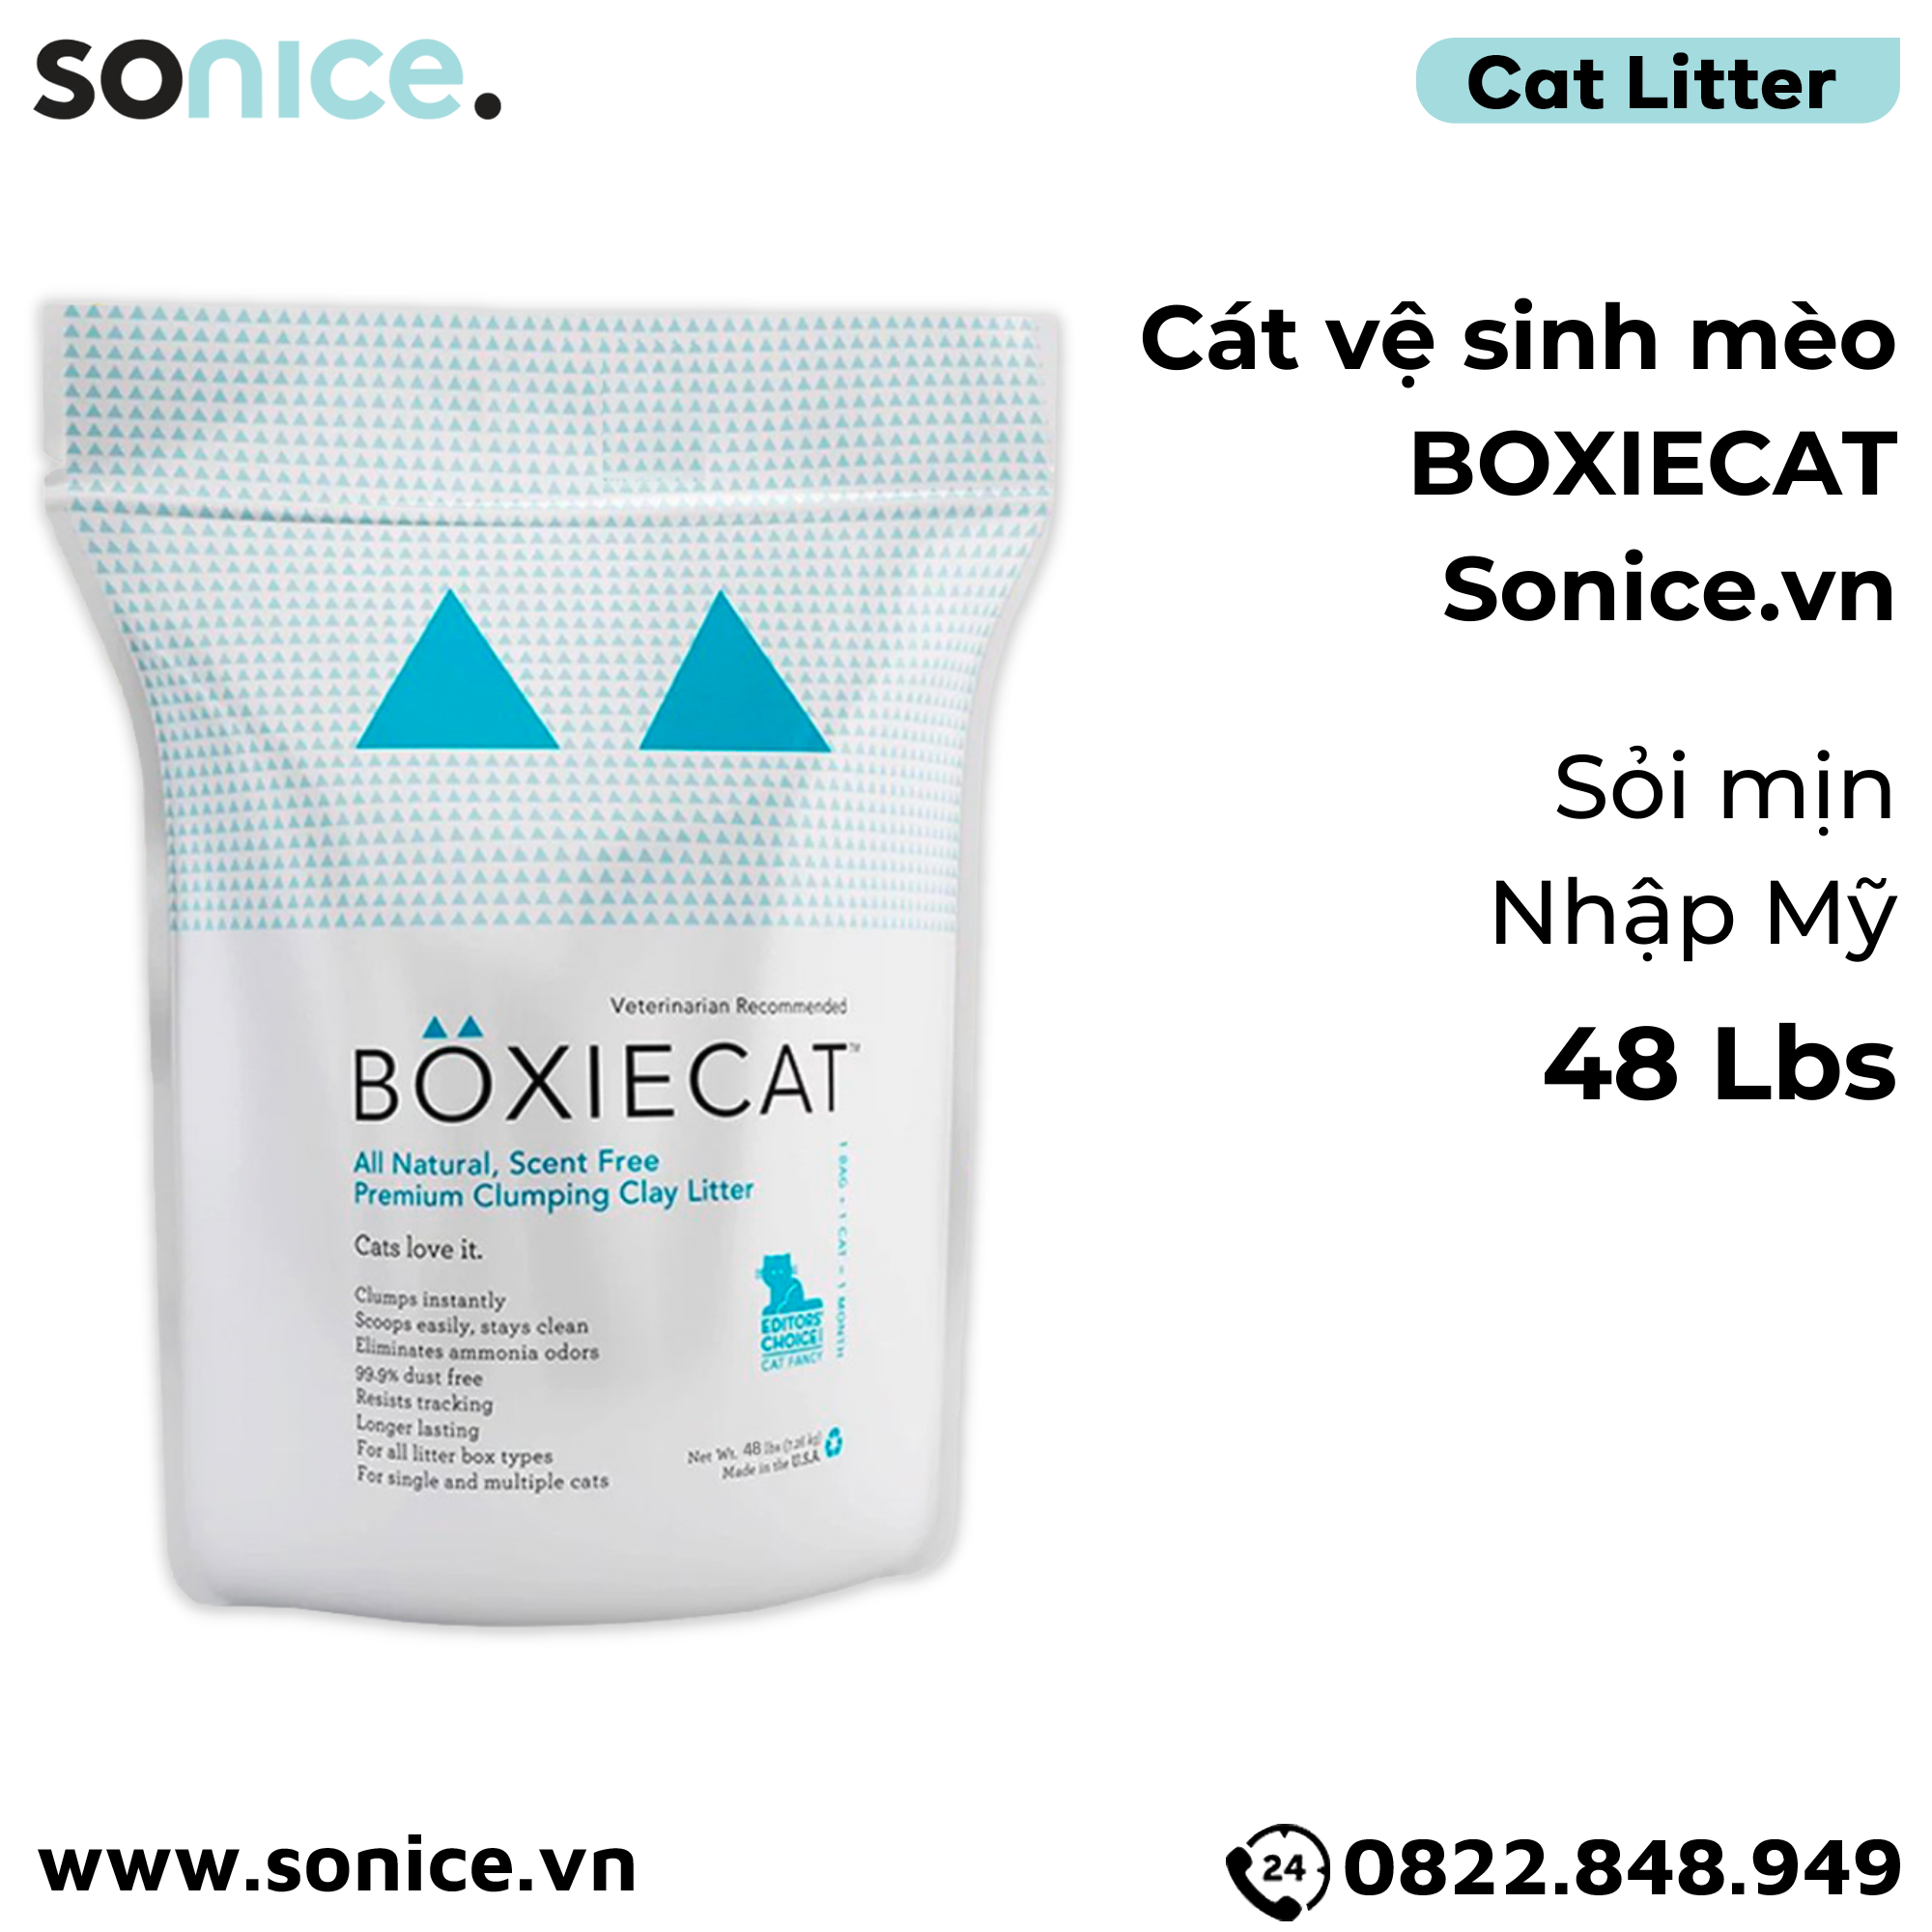  Cát vệ sinh cho mèo BOXIECAT 48Lbs - Sỏi mịn nhập Mỹ SONICE. 